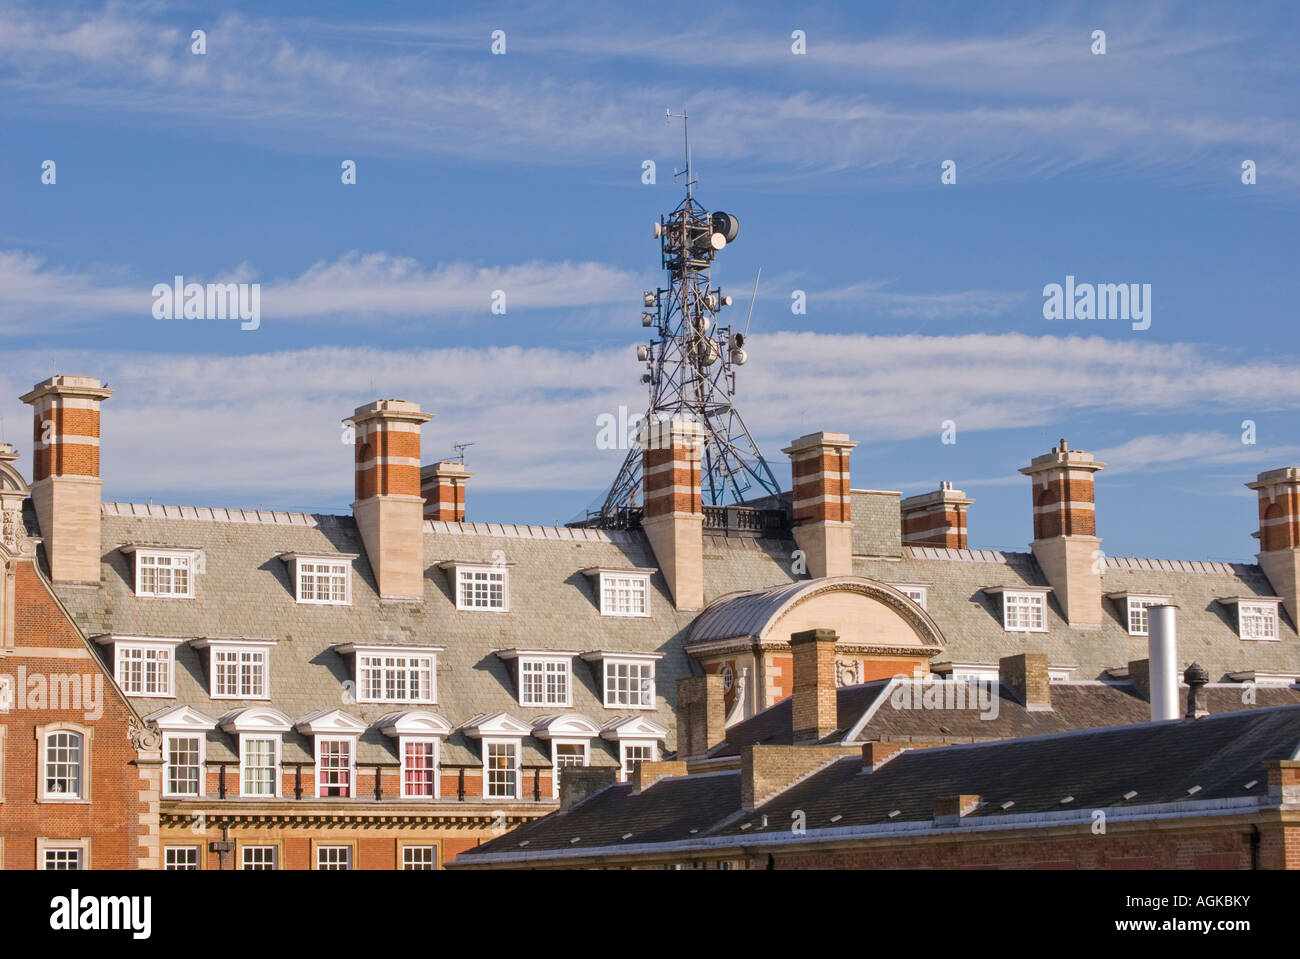 La torre delle comunicazioni sul tetto di un edificio, York Foto Stock